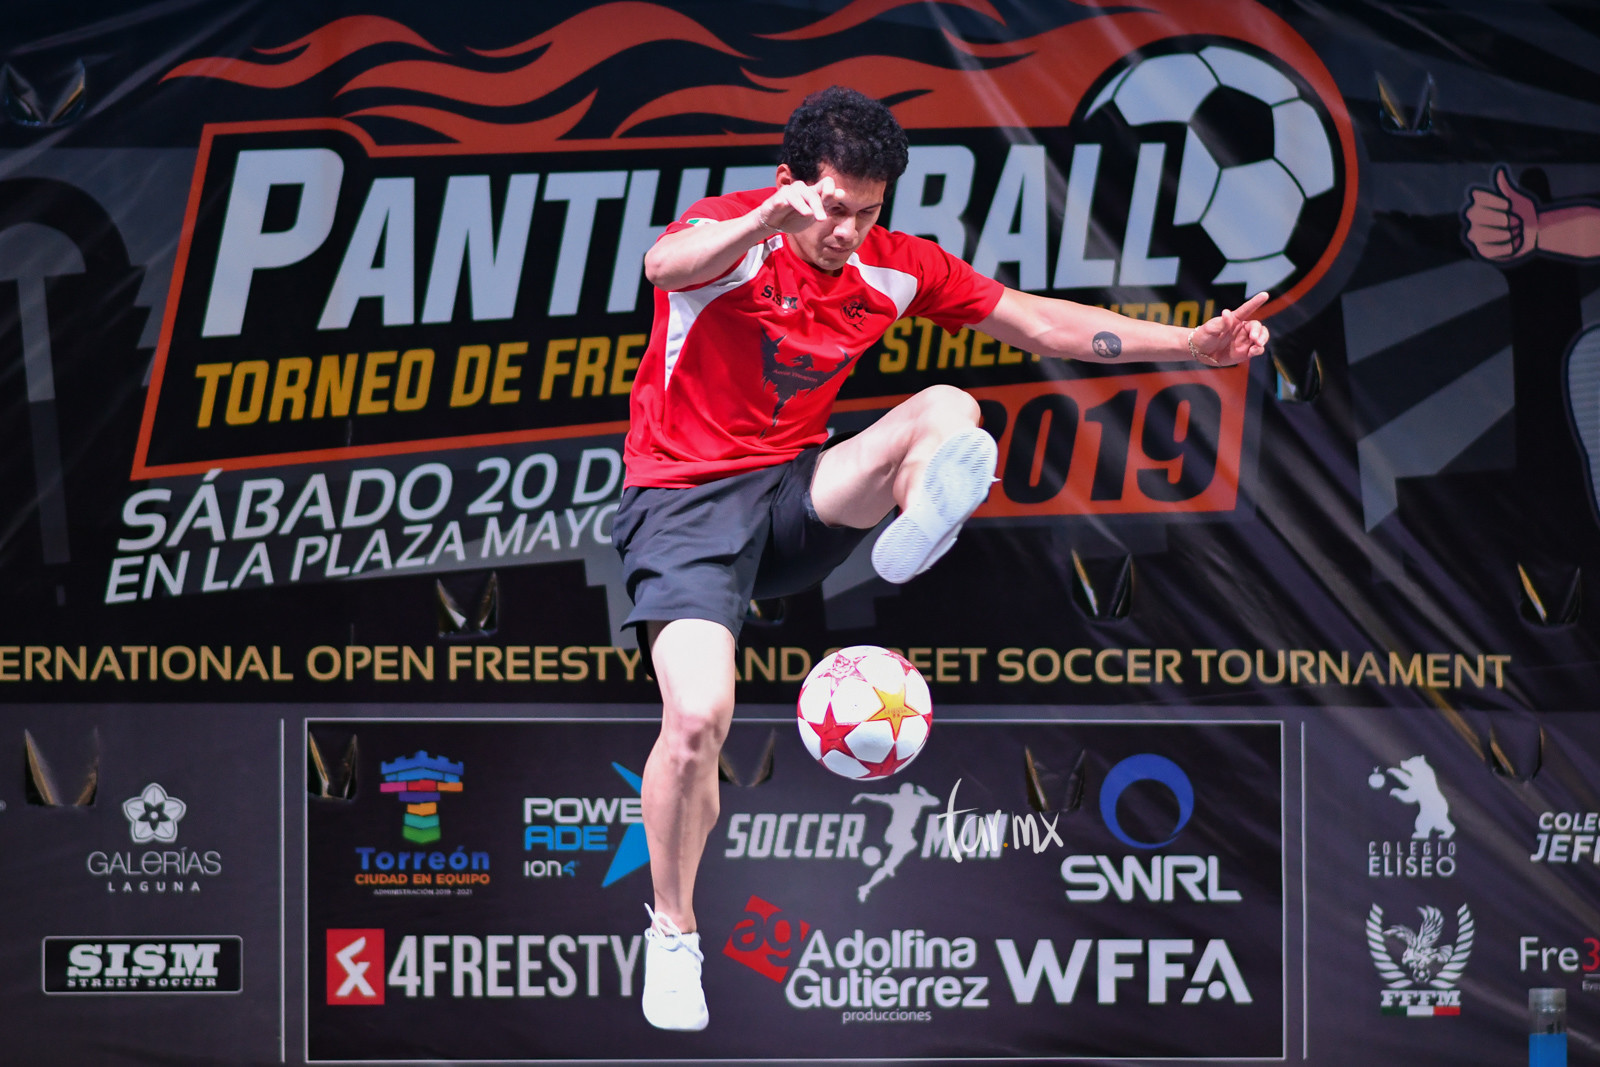 Panther Ball 2019 en Torreón